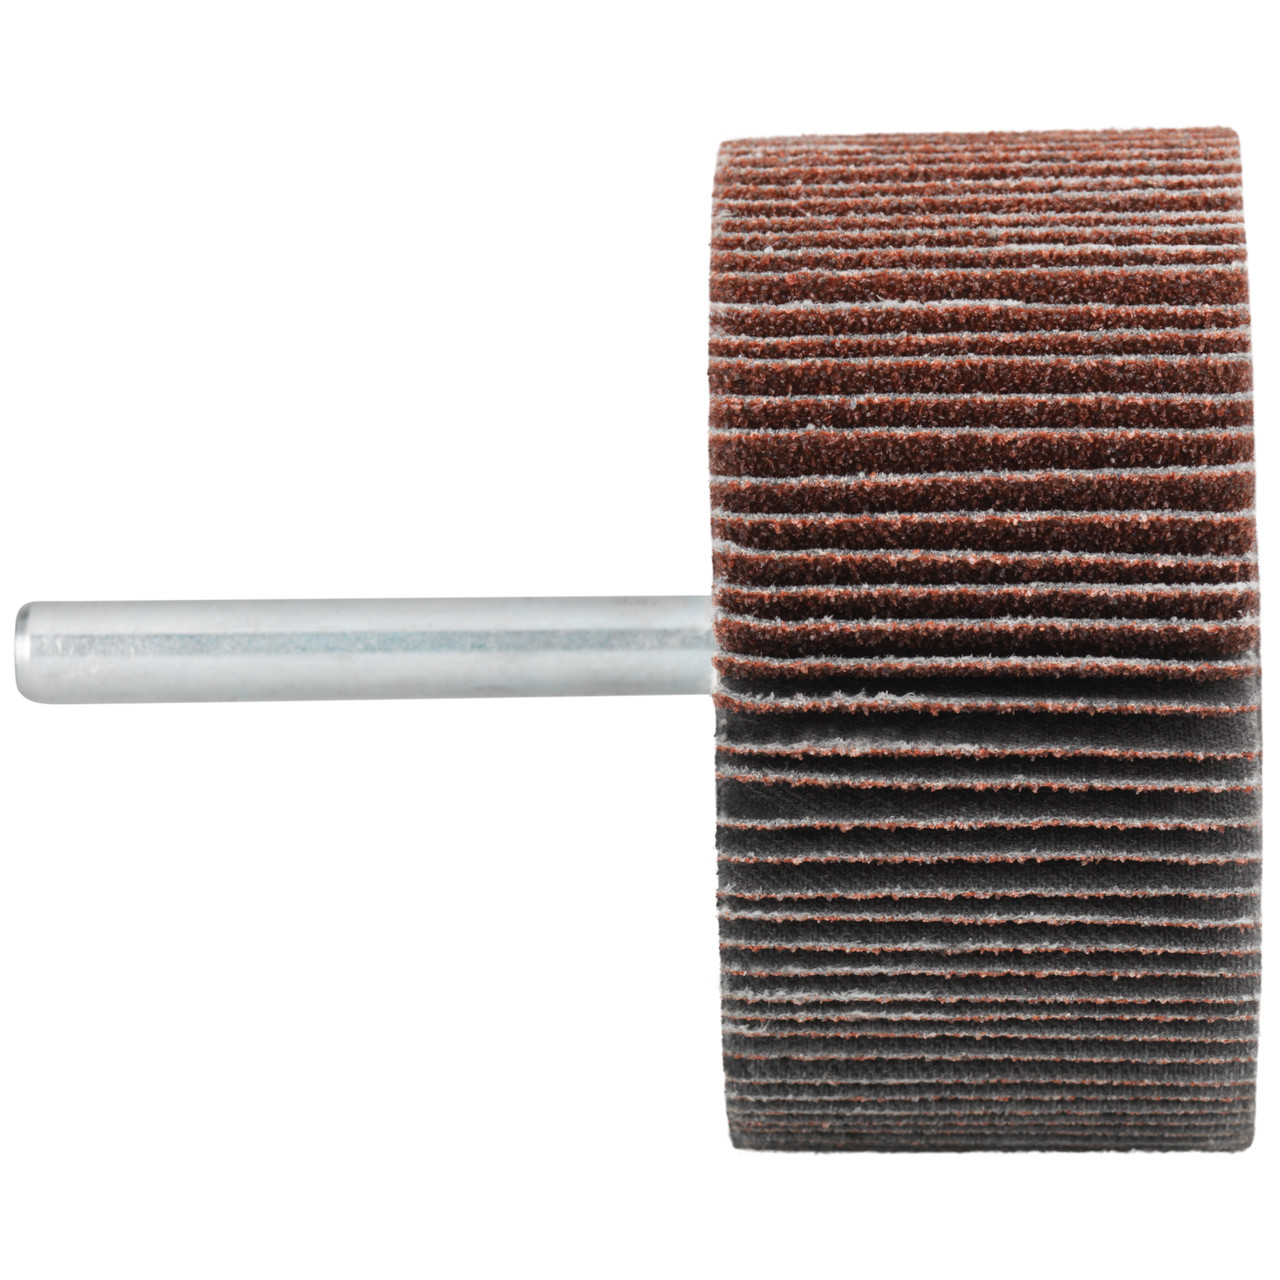 Tyrolit A-P01 C X Pennen DxD 50x30 Voor staal, roestvast staal en non-ferrometalen, P80, vorm: 52LA, Art. 816941